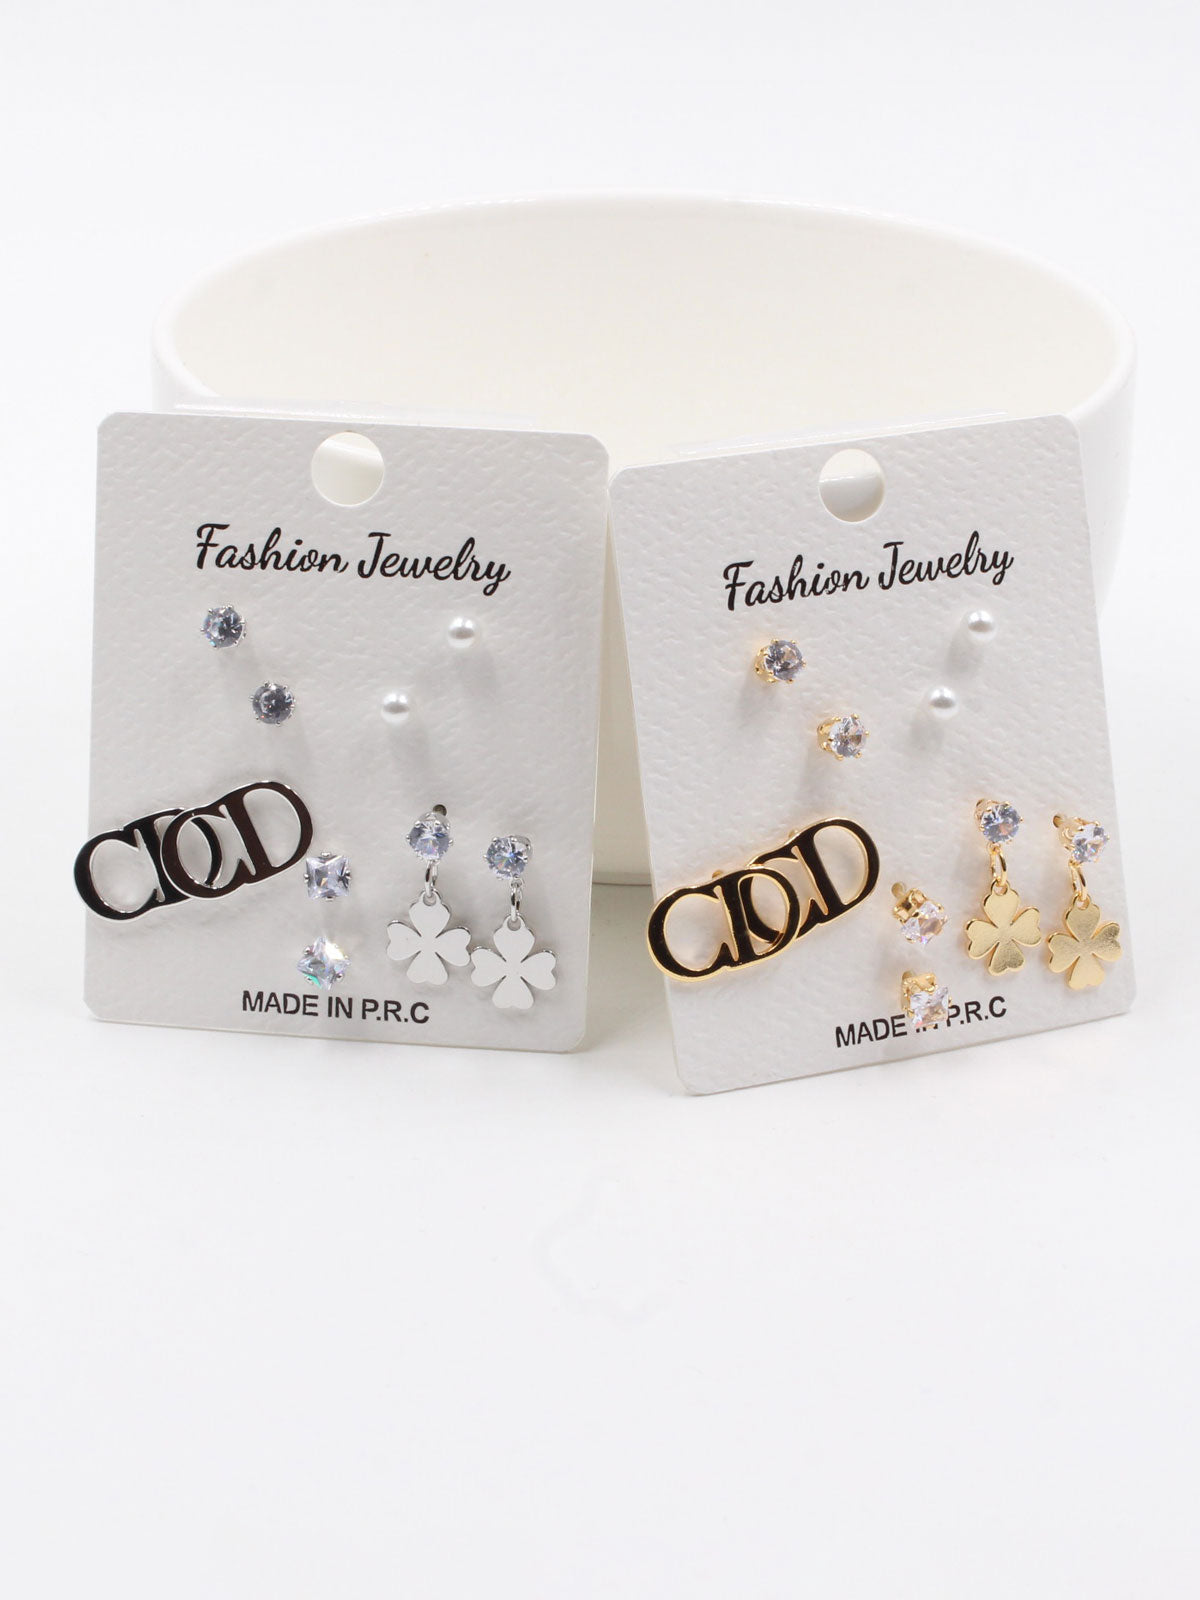 Dior earrings collection - مجموعة ديور حلق حلق Jewel   